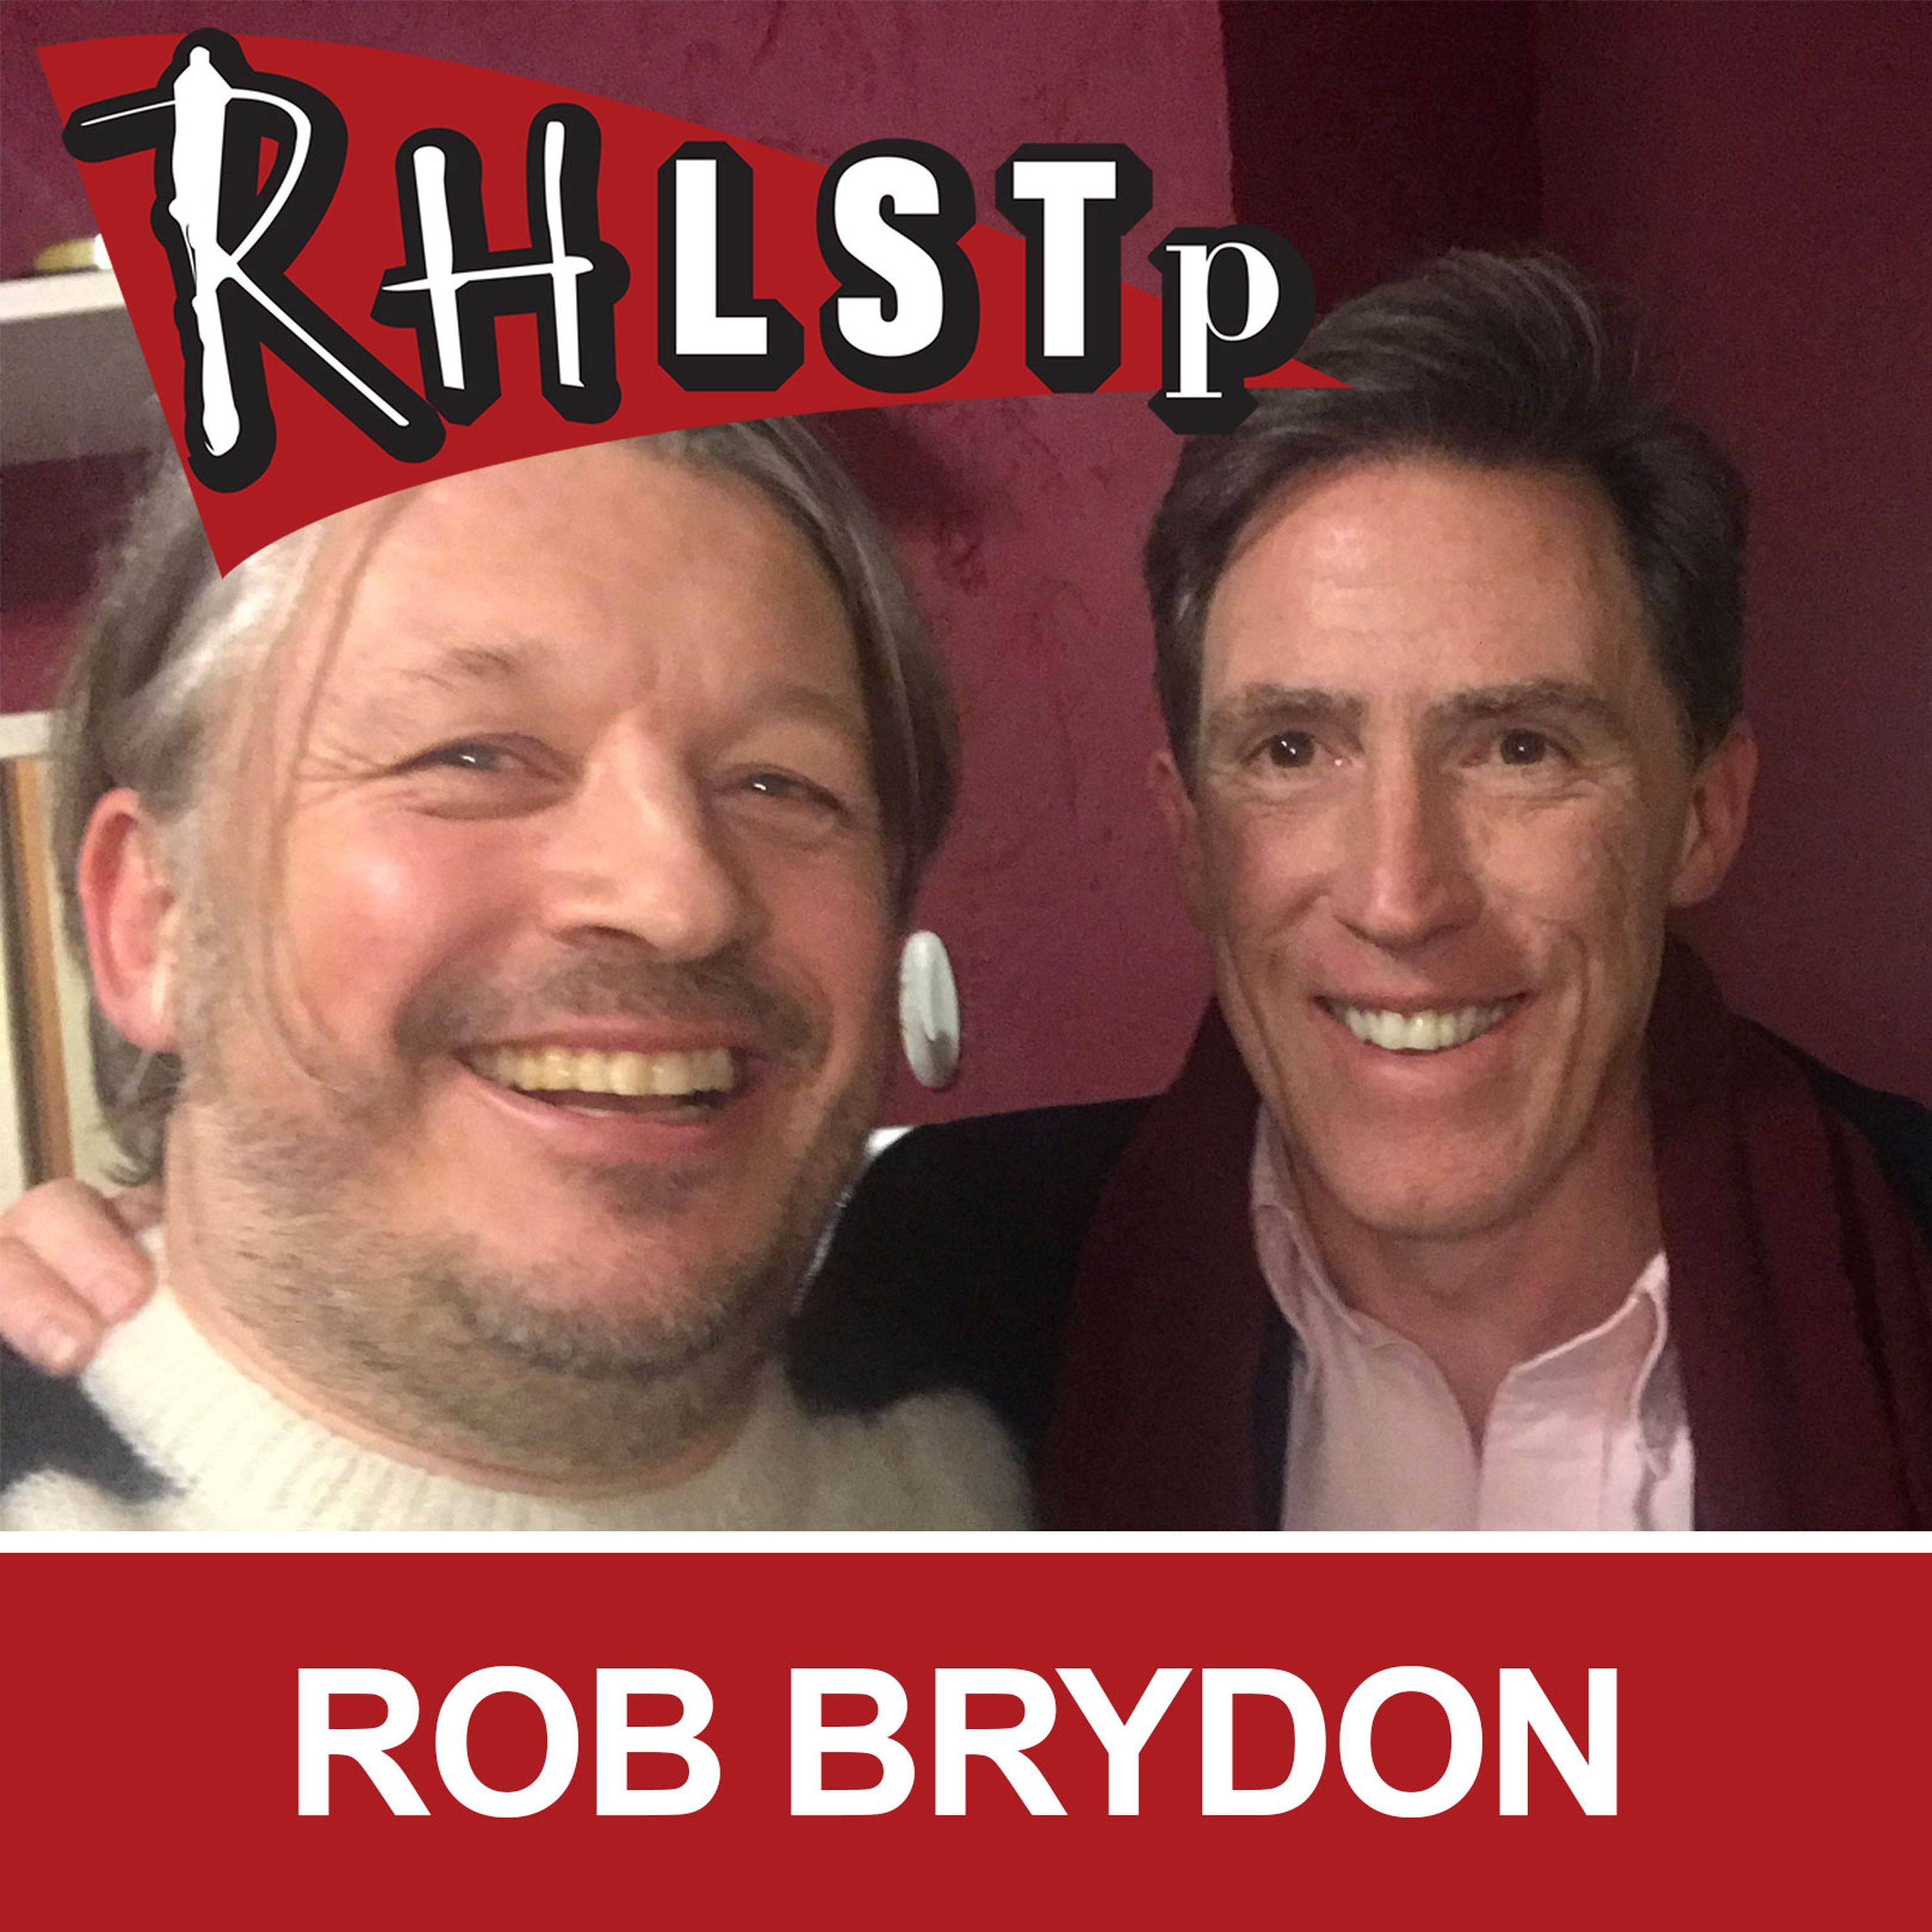 RHLSTP 204 - Rob Brydon